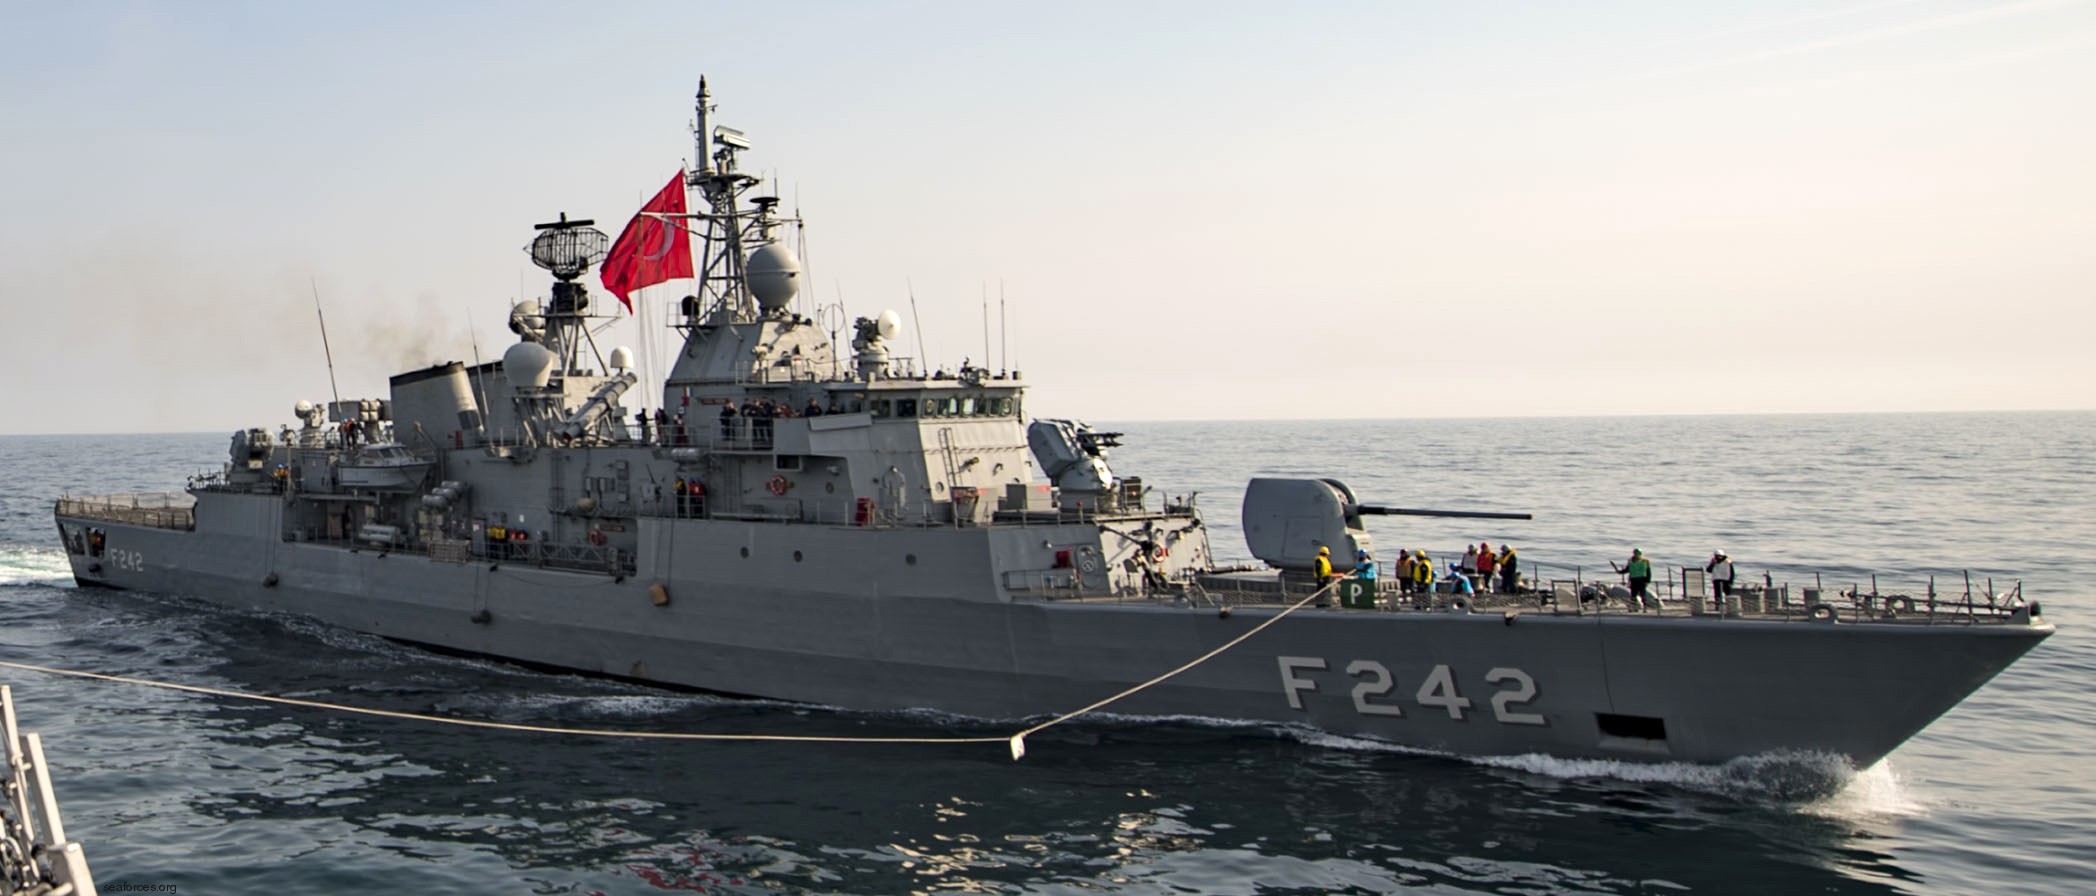 f-242 tcg fatih yavuz meko-200tn class frigate turkish navy türk deniz kuvvetleri golcuk naval shipyard kocaeli 04x